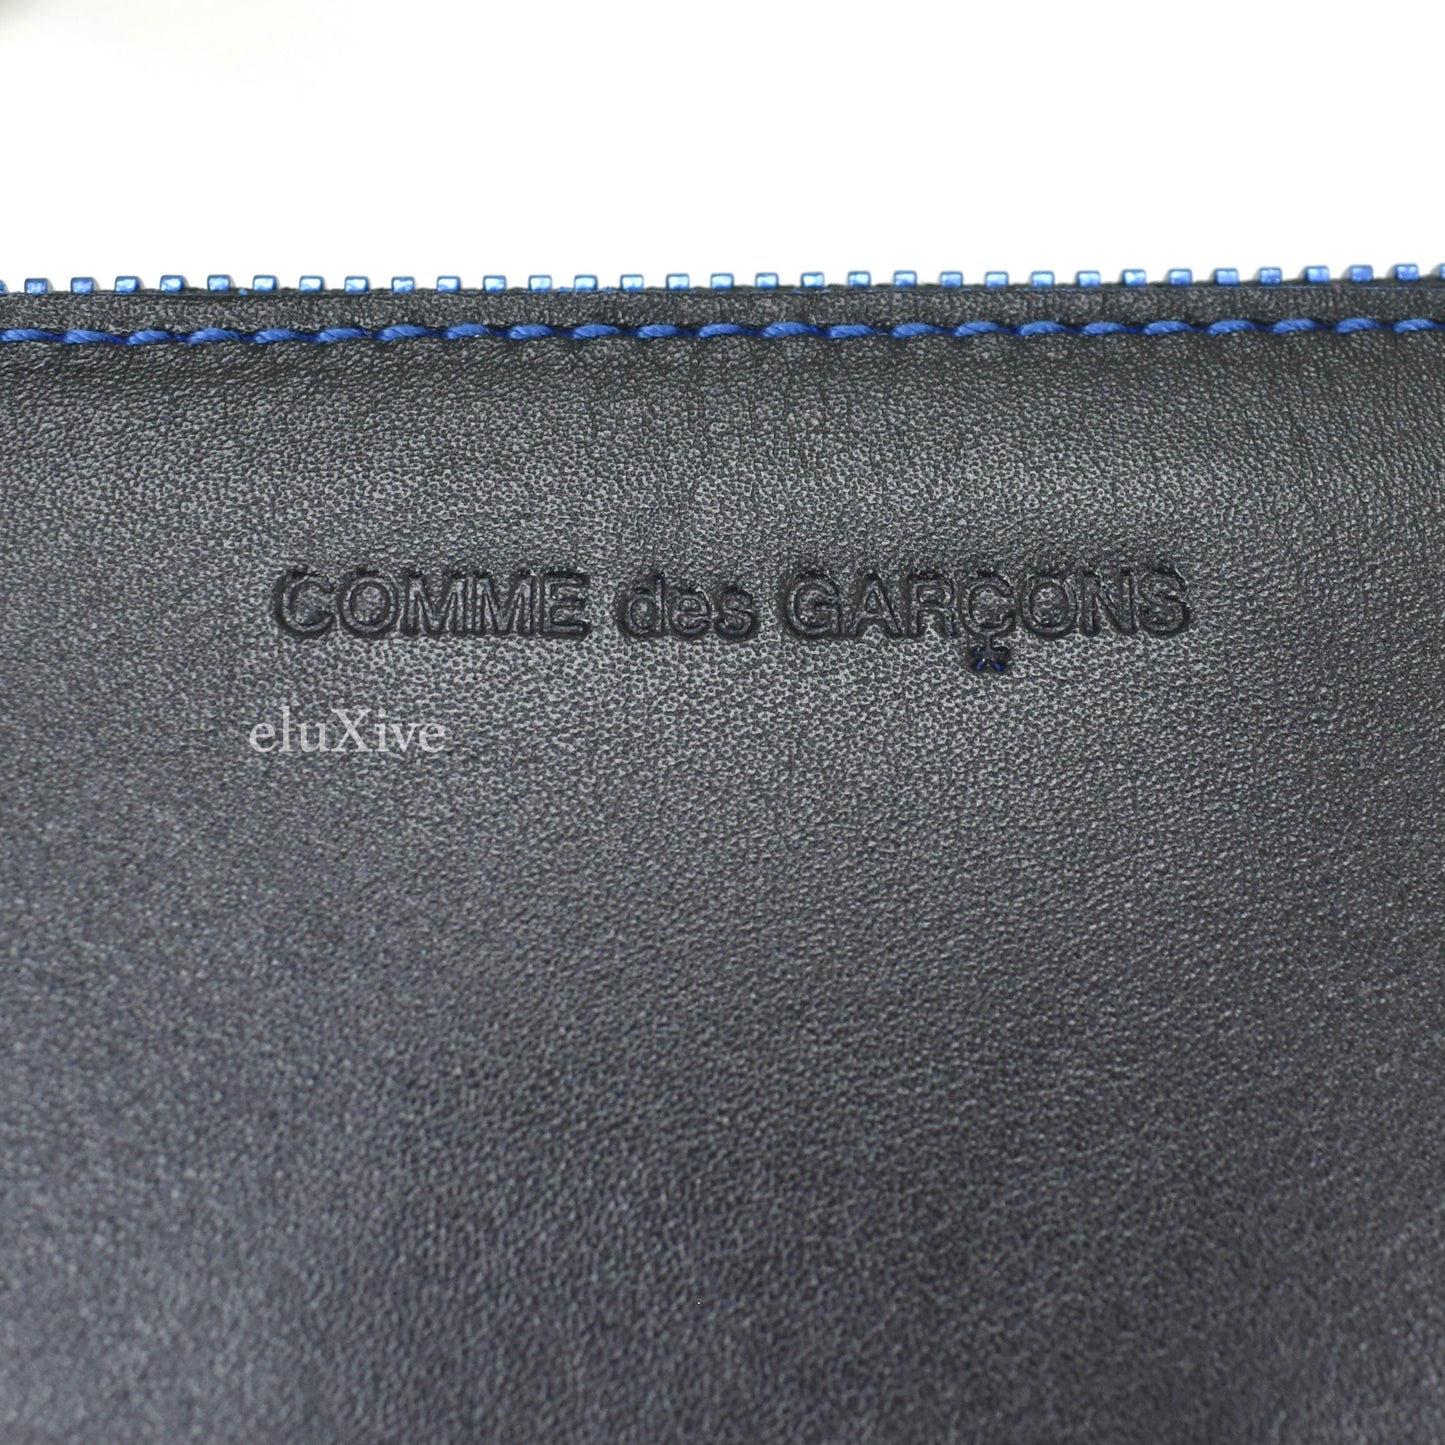 Comme des Garcons - Black/Metallic Blue Leather Marvellous Zip Wallet